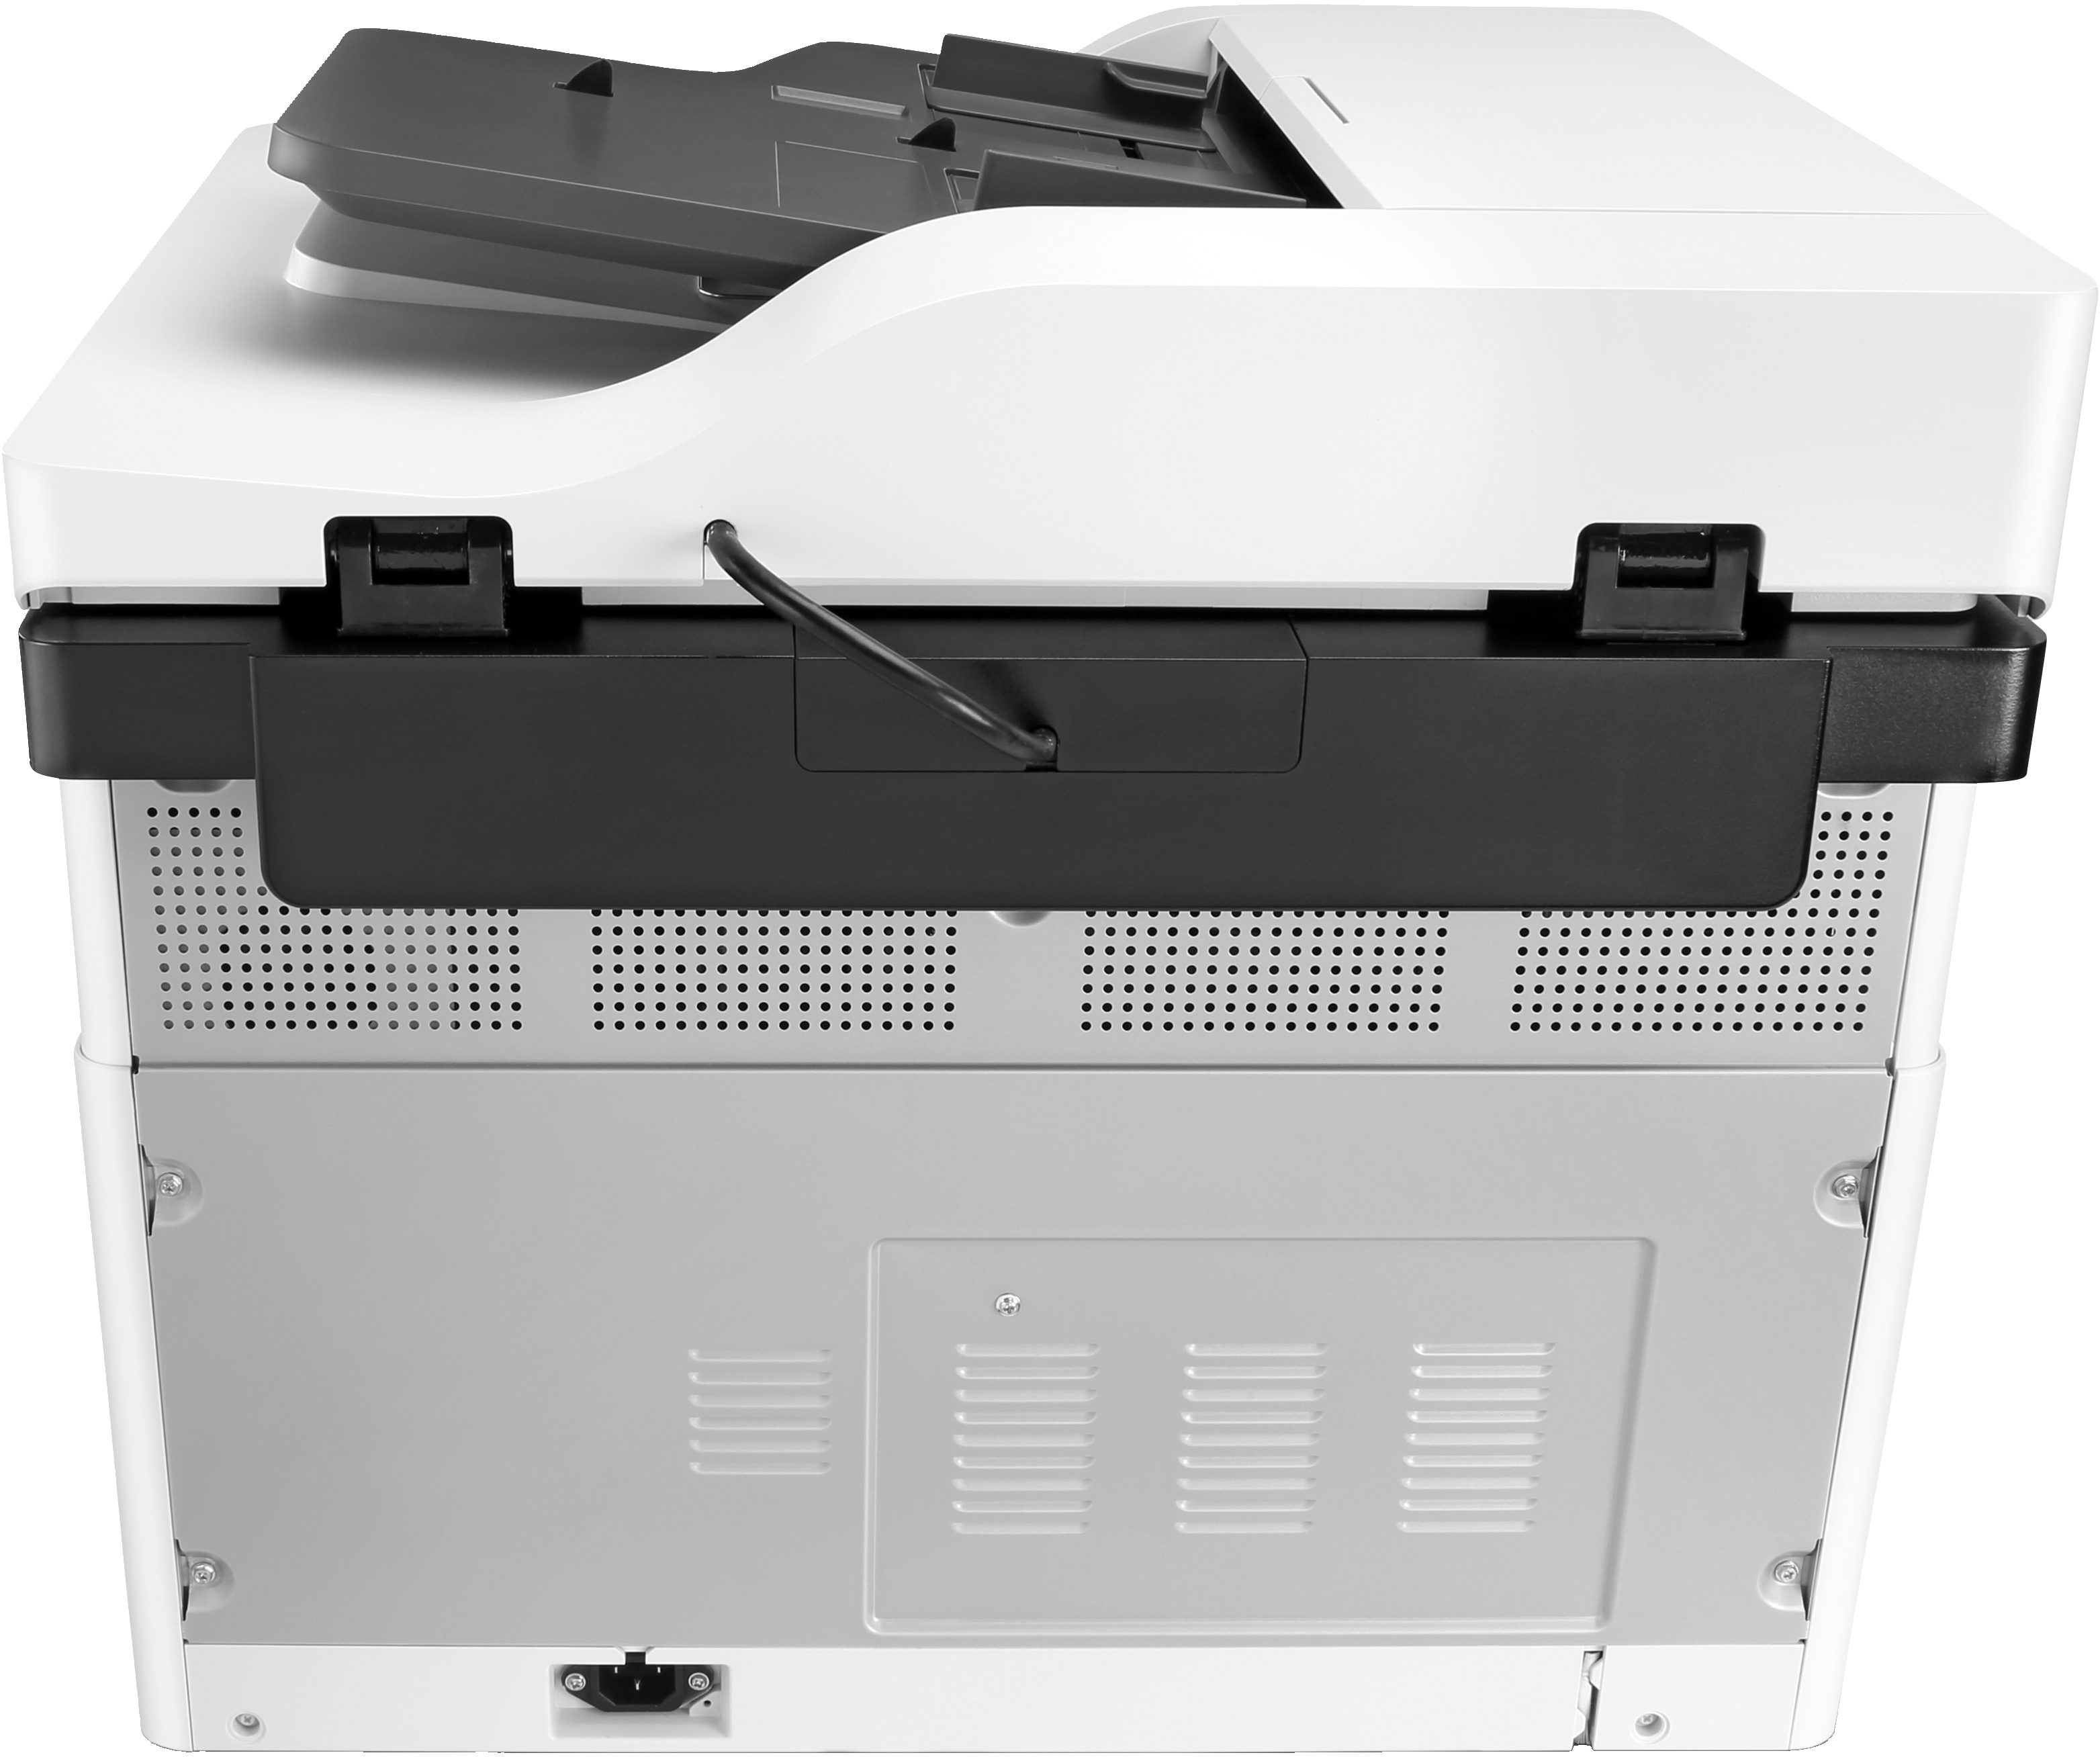 HP LaserJet Stampante multifunzione M443nda, Bianco e nero, per Aziendale, Stampa, copia, scansione [8AF72A]